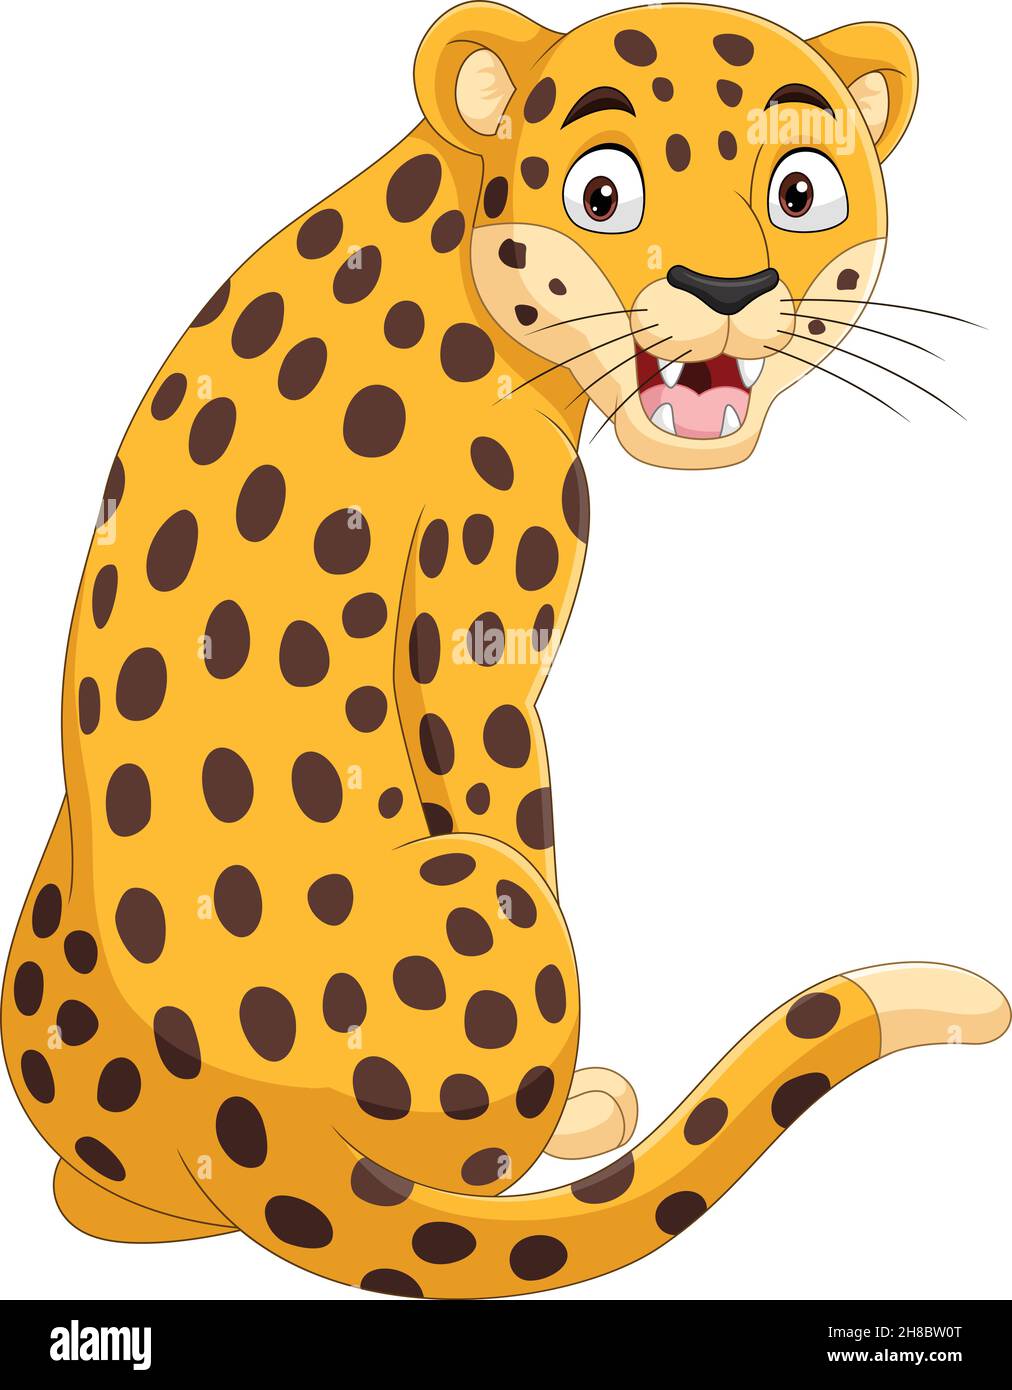 Dessin animé léopard drôle assis et rugissant Illustration de Vecteur